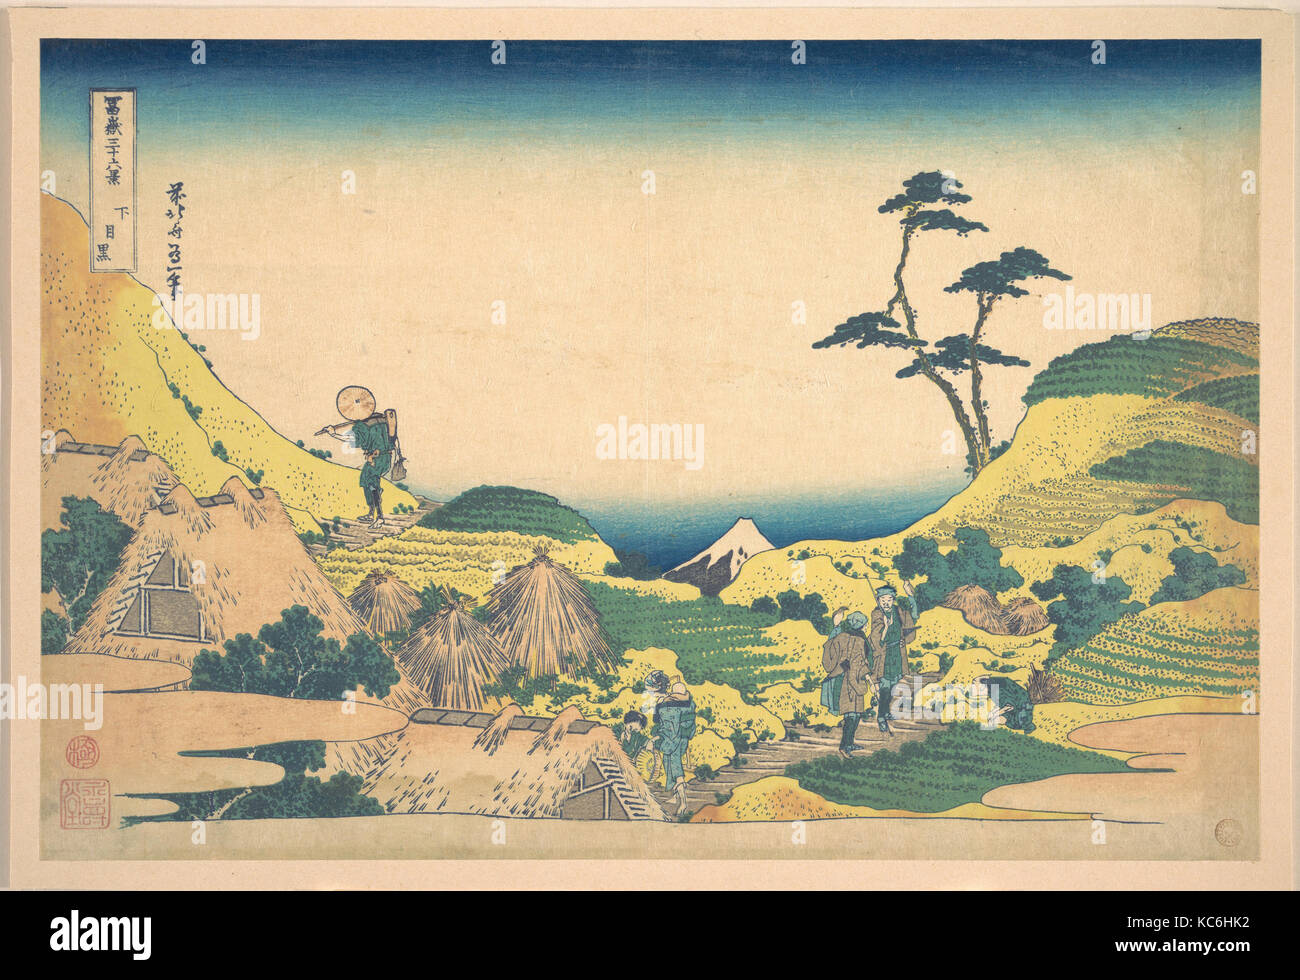 冨嶽三十六景　下目黒, Lower Meguro (Shimo Meguro), from the series Thirty-six Views of Mount Fuji (Fugaku sanjūrokkei), Katsushika Hokusai Stock Photo